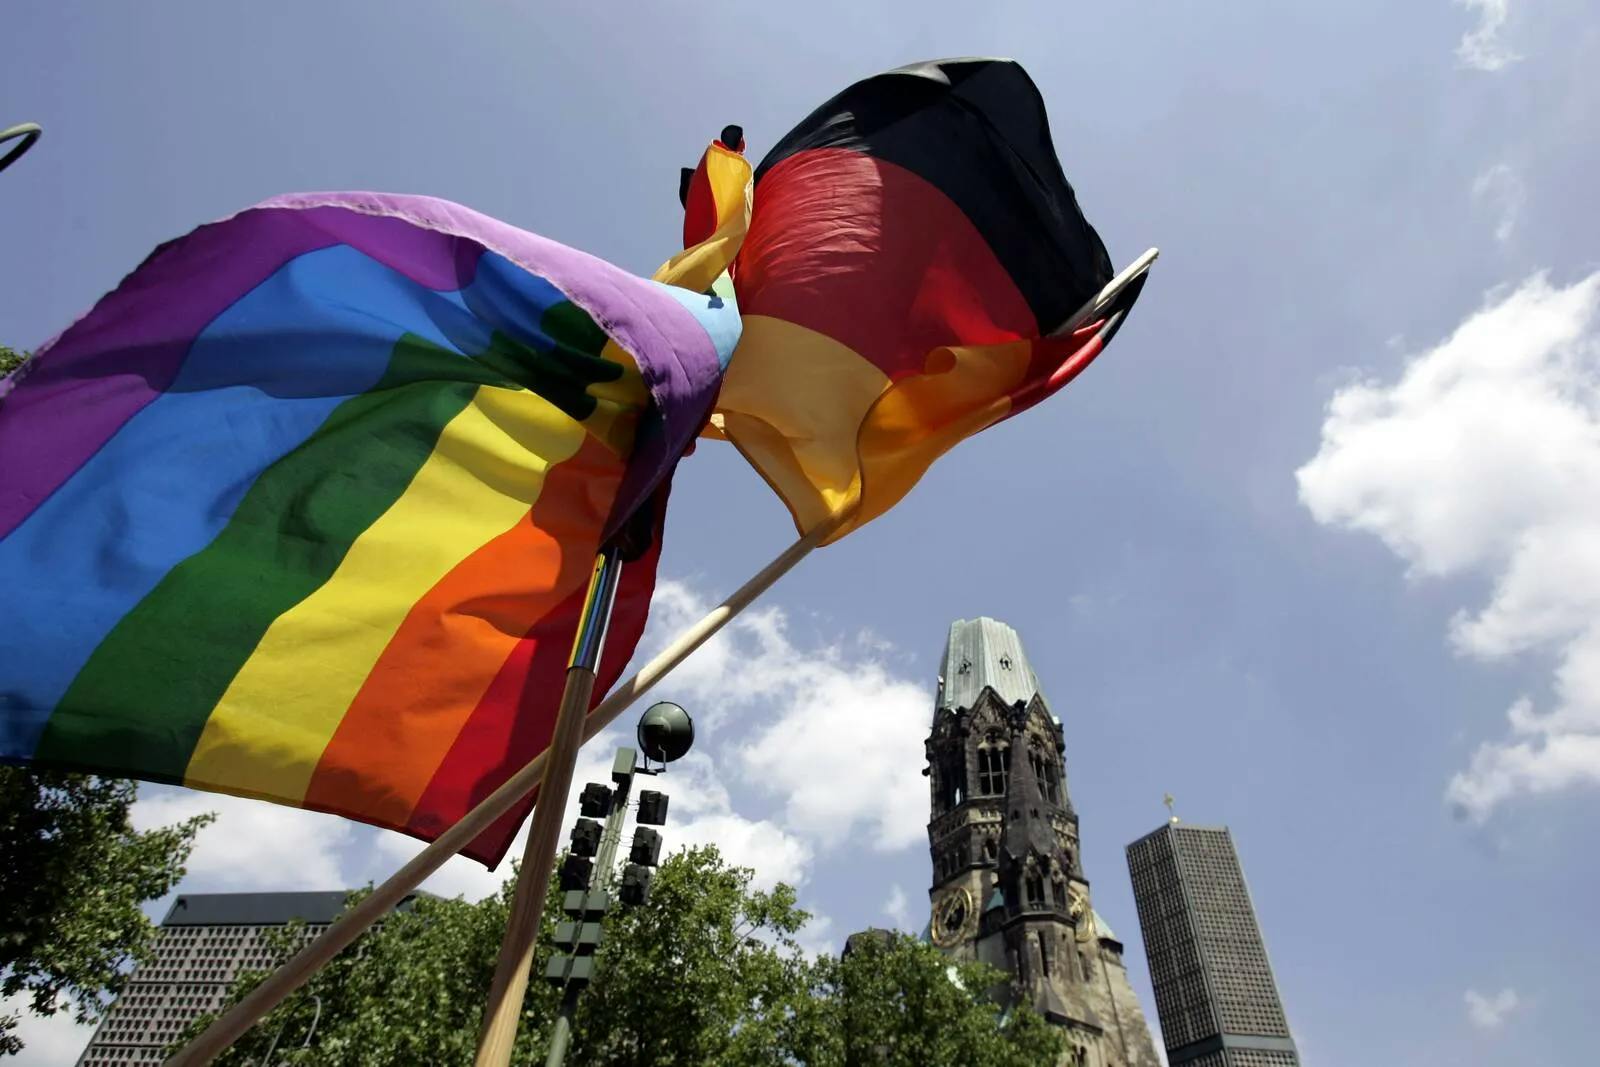 Niedersachsen: Deutschlandfahnen für Polizei verboten, Regenbogenflaggen aber erlaubt